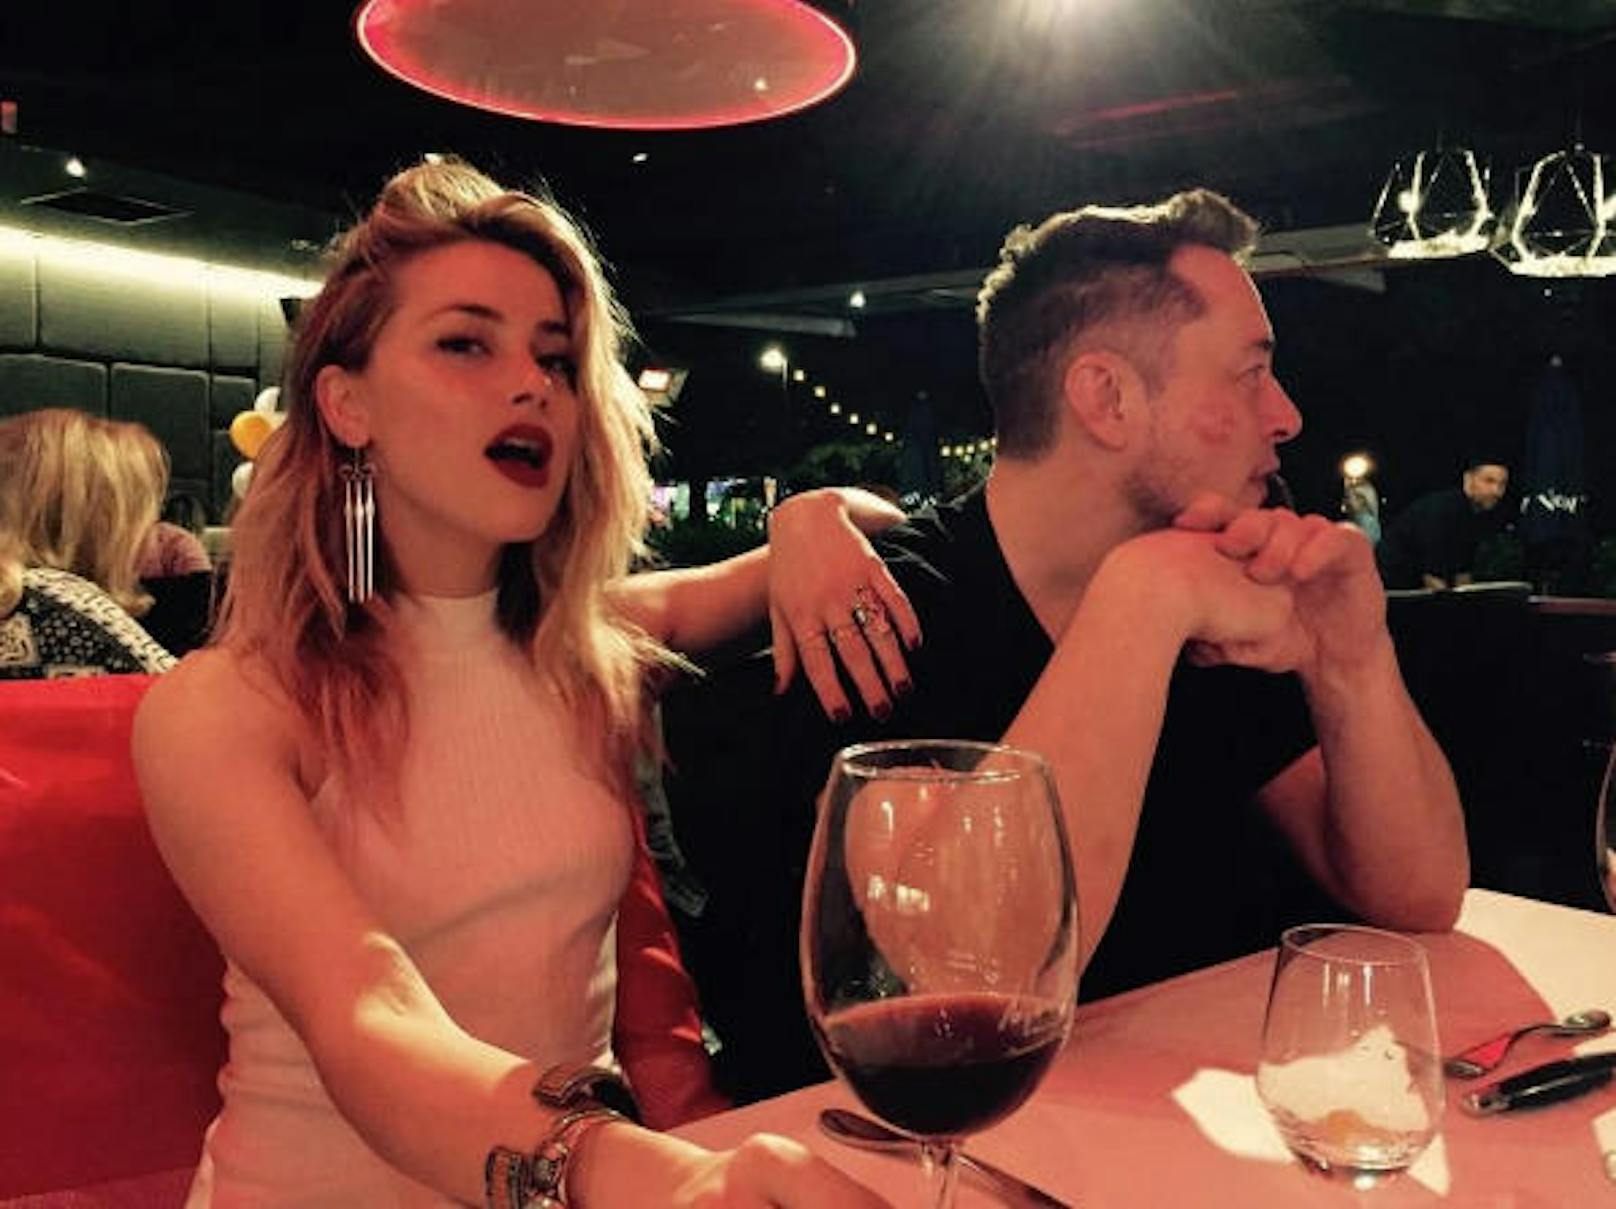 24.04.2017: Schauspielerin und Johnny-Depp-Exfrau Amber Heard zeigt auf Instagram ihren Neuen: Tesla-Unternehmer Elon Musk.